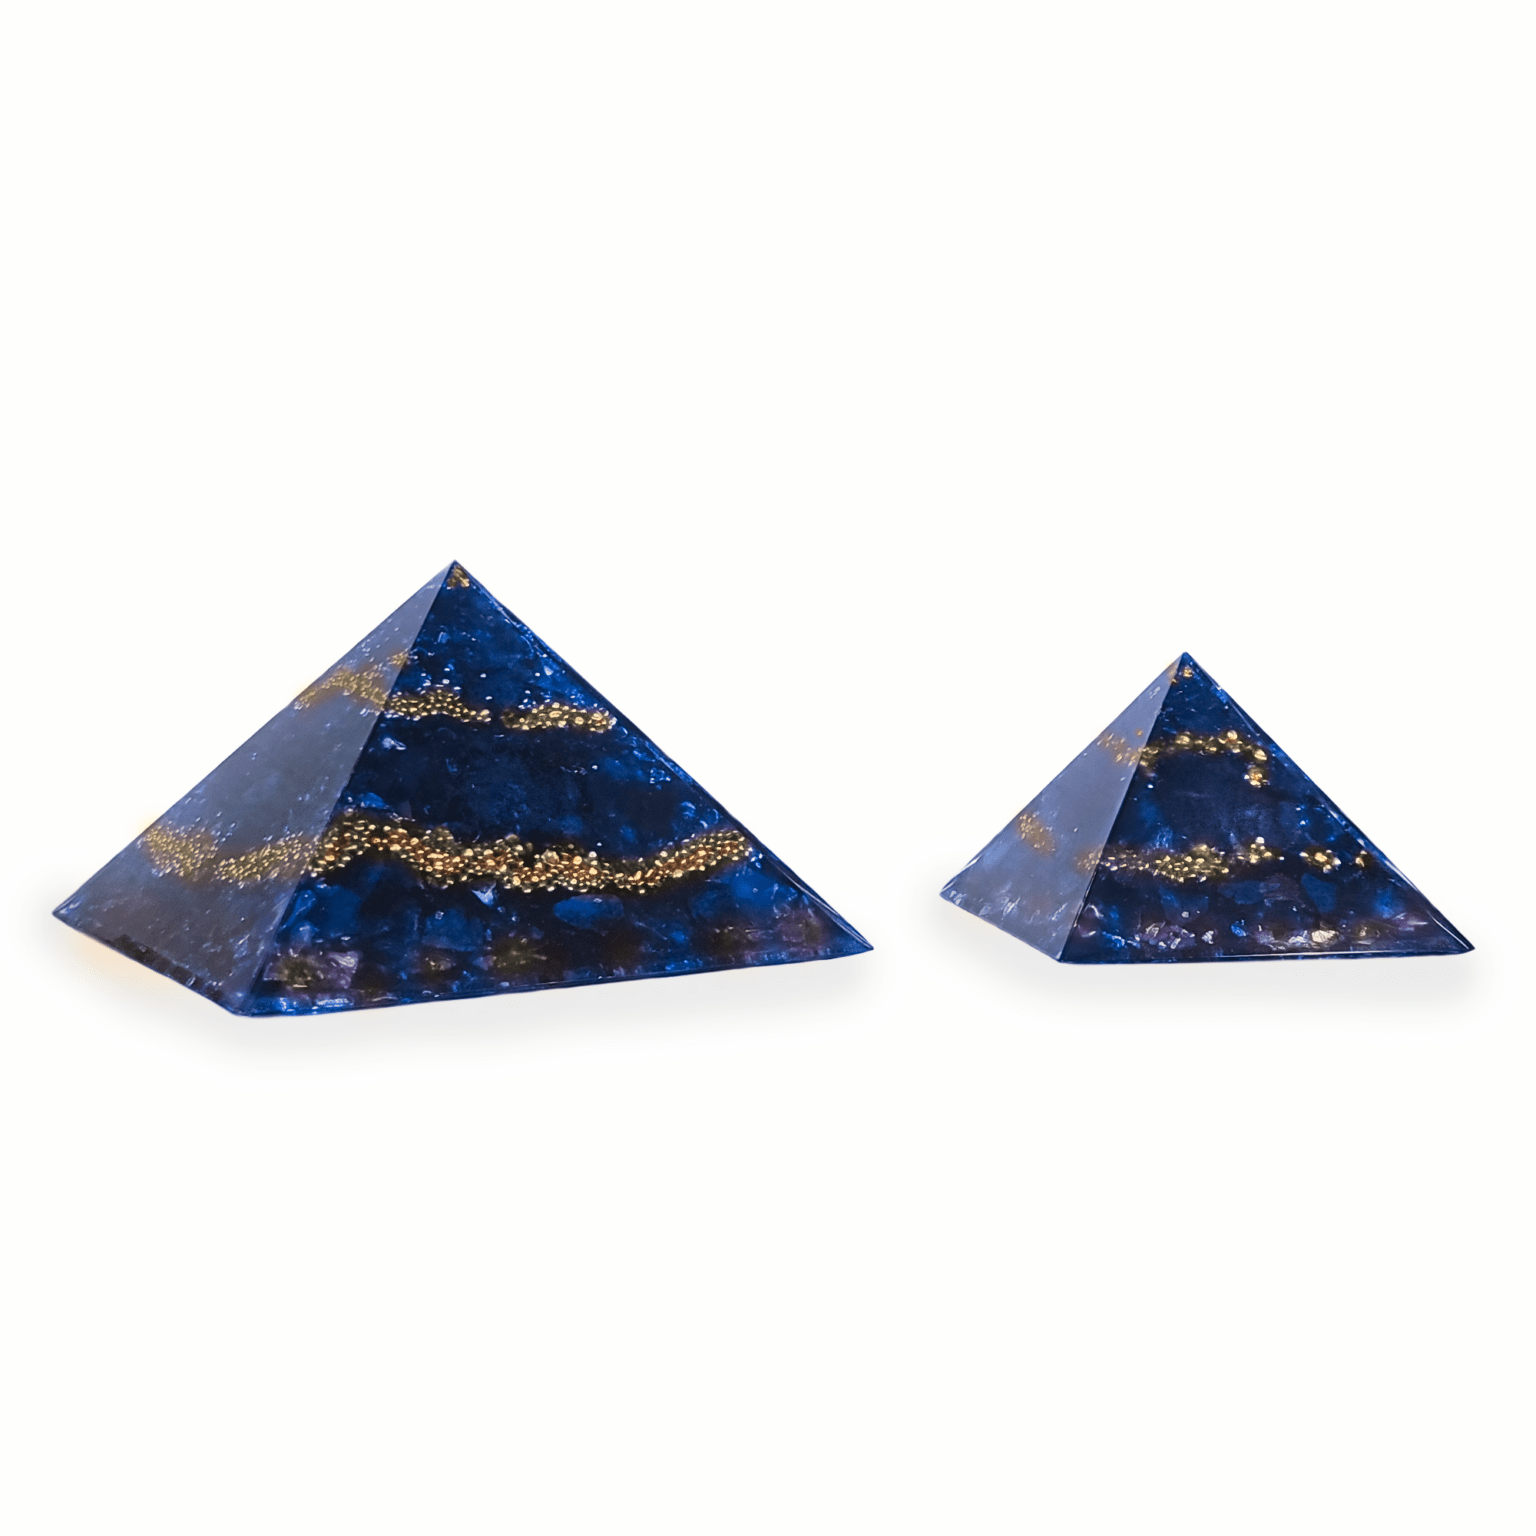 Eine große XXL Orgonit Pyramide, sowie ein mittelgroßer Orgonit mit den Edelsteinen Sodalith, Lapislazuli & Saphir. Die Orgoniten sind blau mit goldenen Metallelementen.